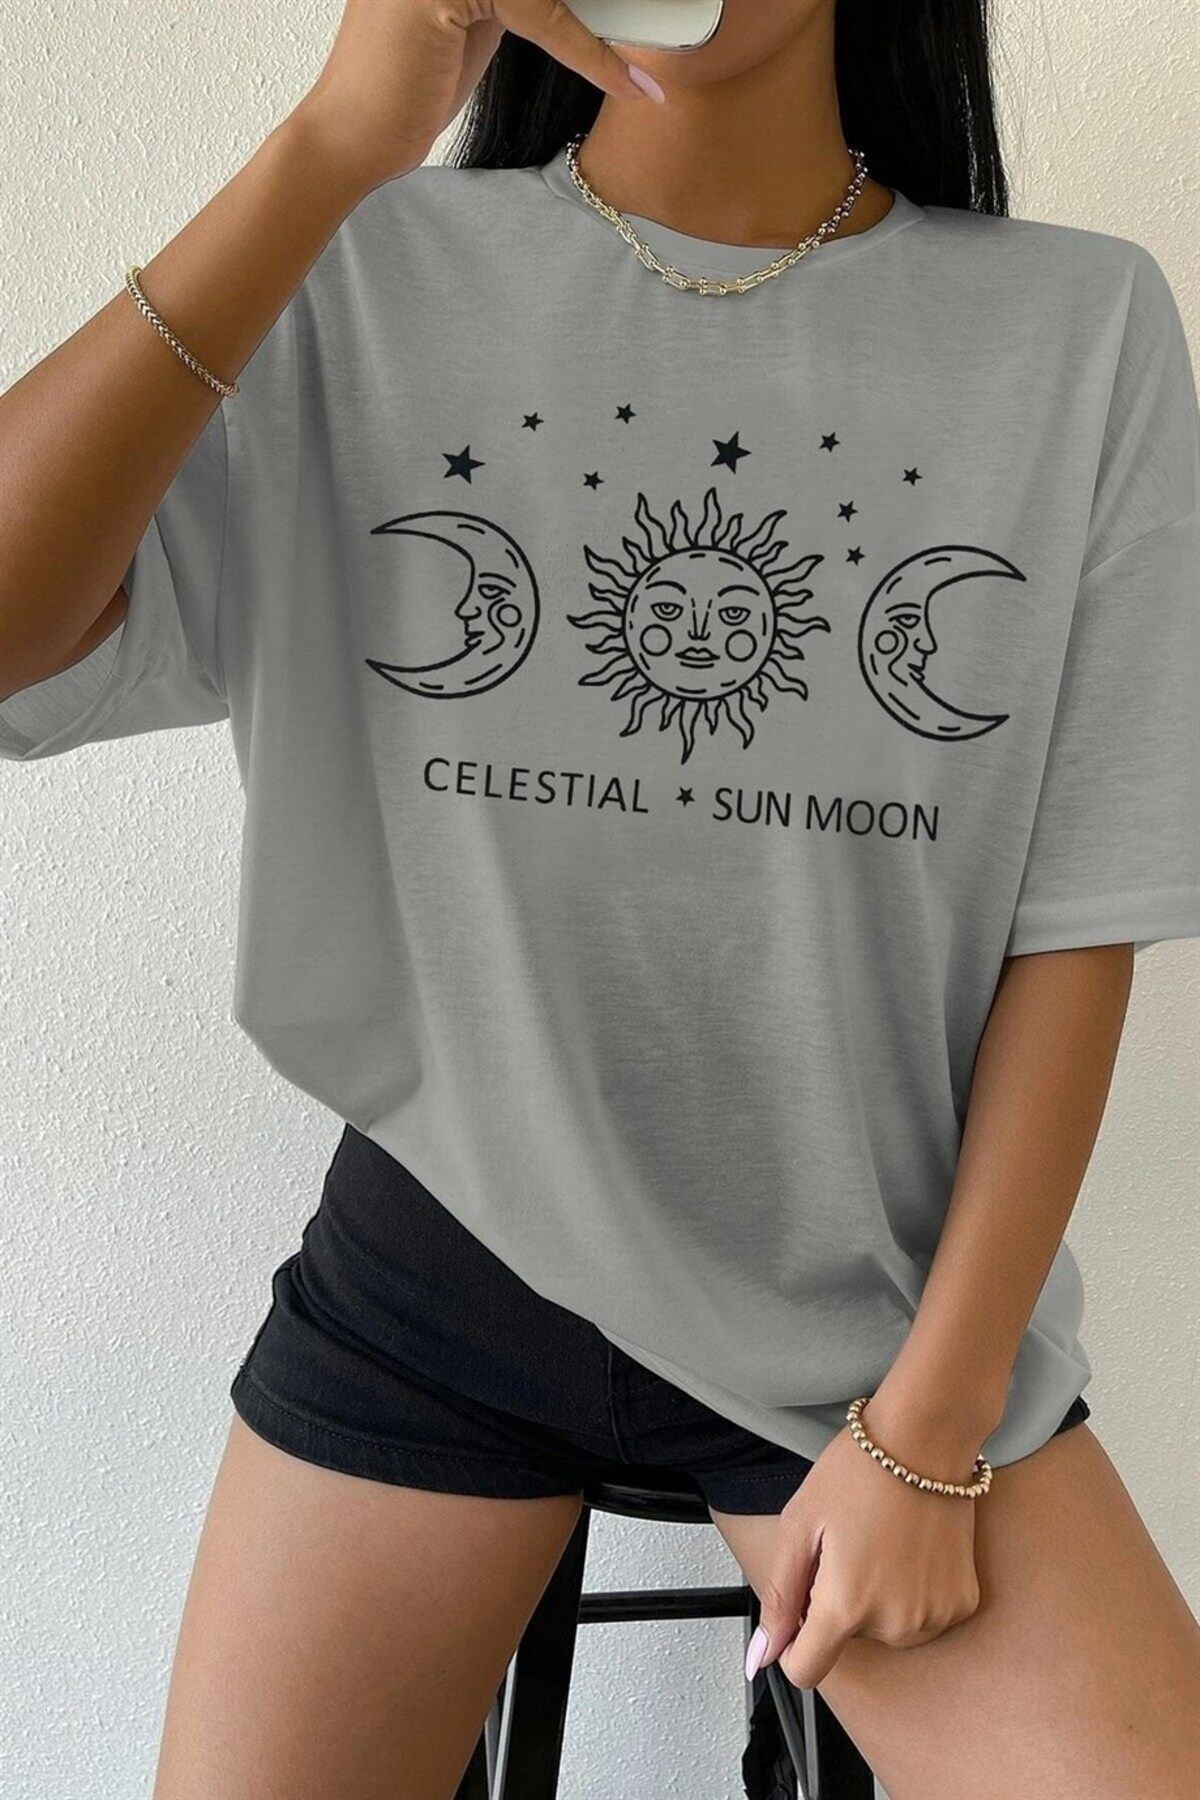 celestial sun moon Kadın Gri Oversize Celestial Sun Moon Baskılı T-shirt - K2113